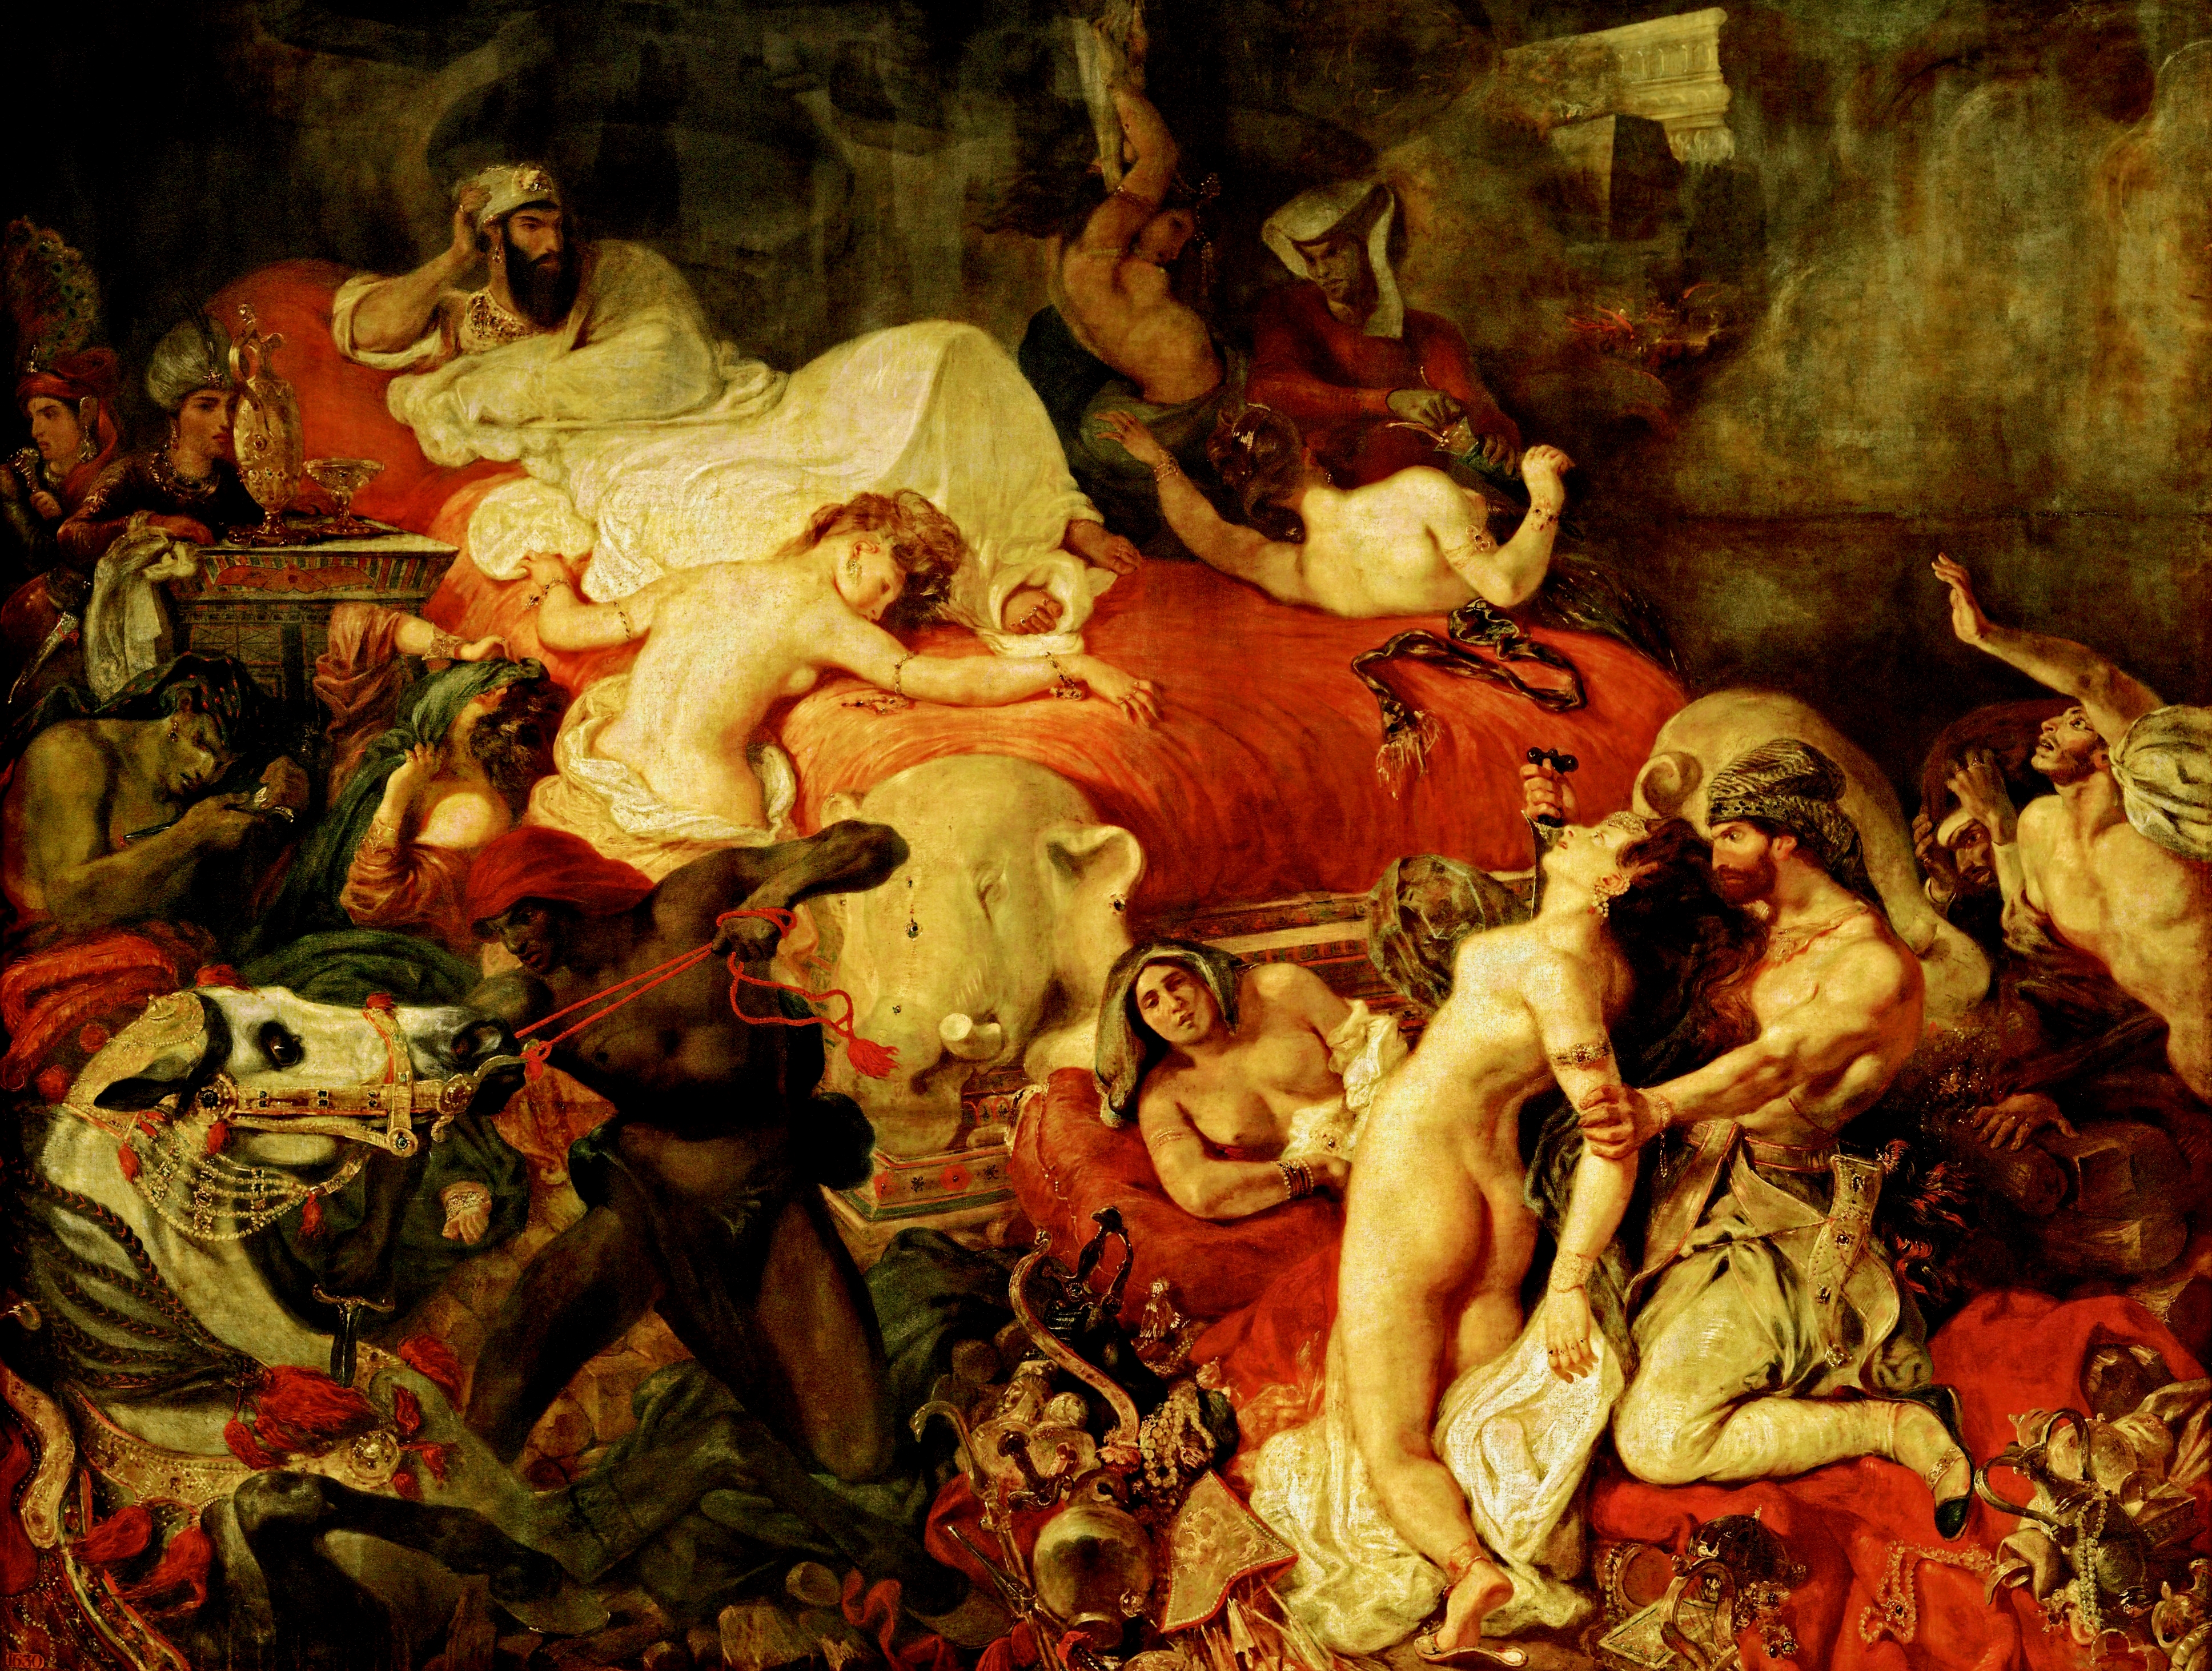 Death of Sardanapalus aka Delacroix La Mort de Sardanapale oil painting on canvas by Eugène Delacroix 1827 ~ Musée du Louvre, Paris